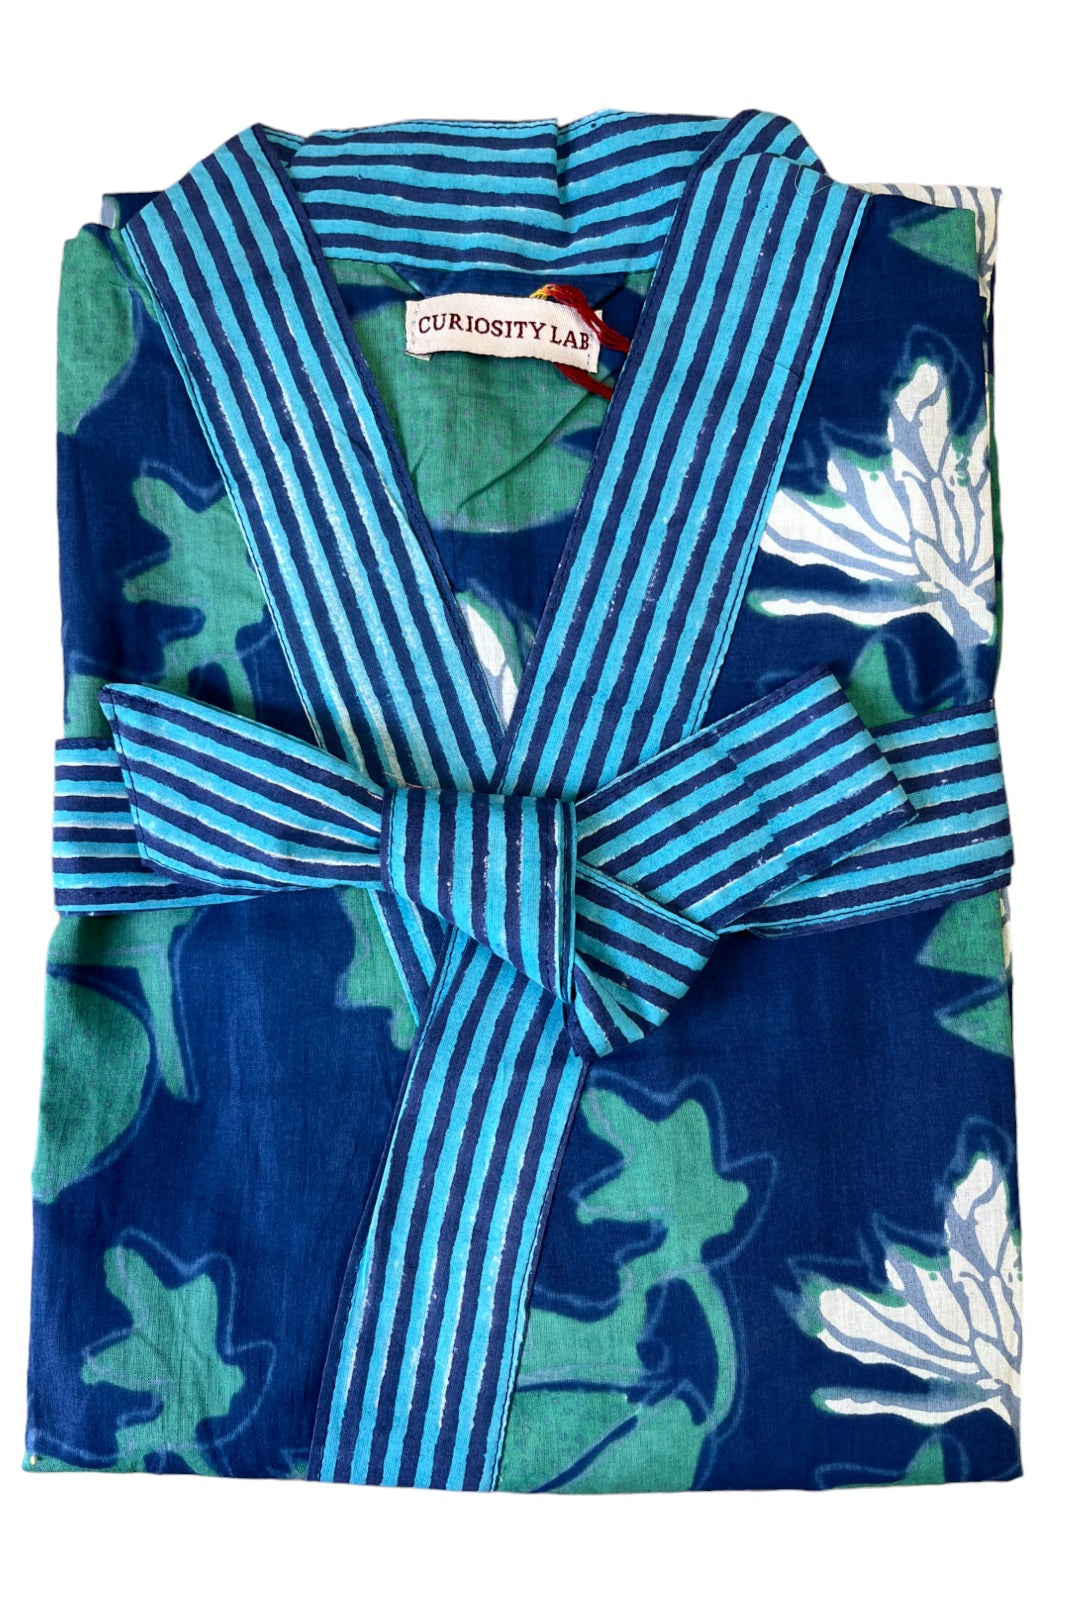 kimono long mandu coton indien